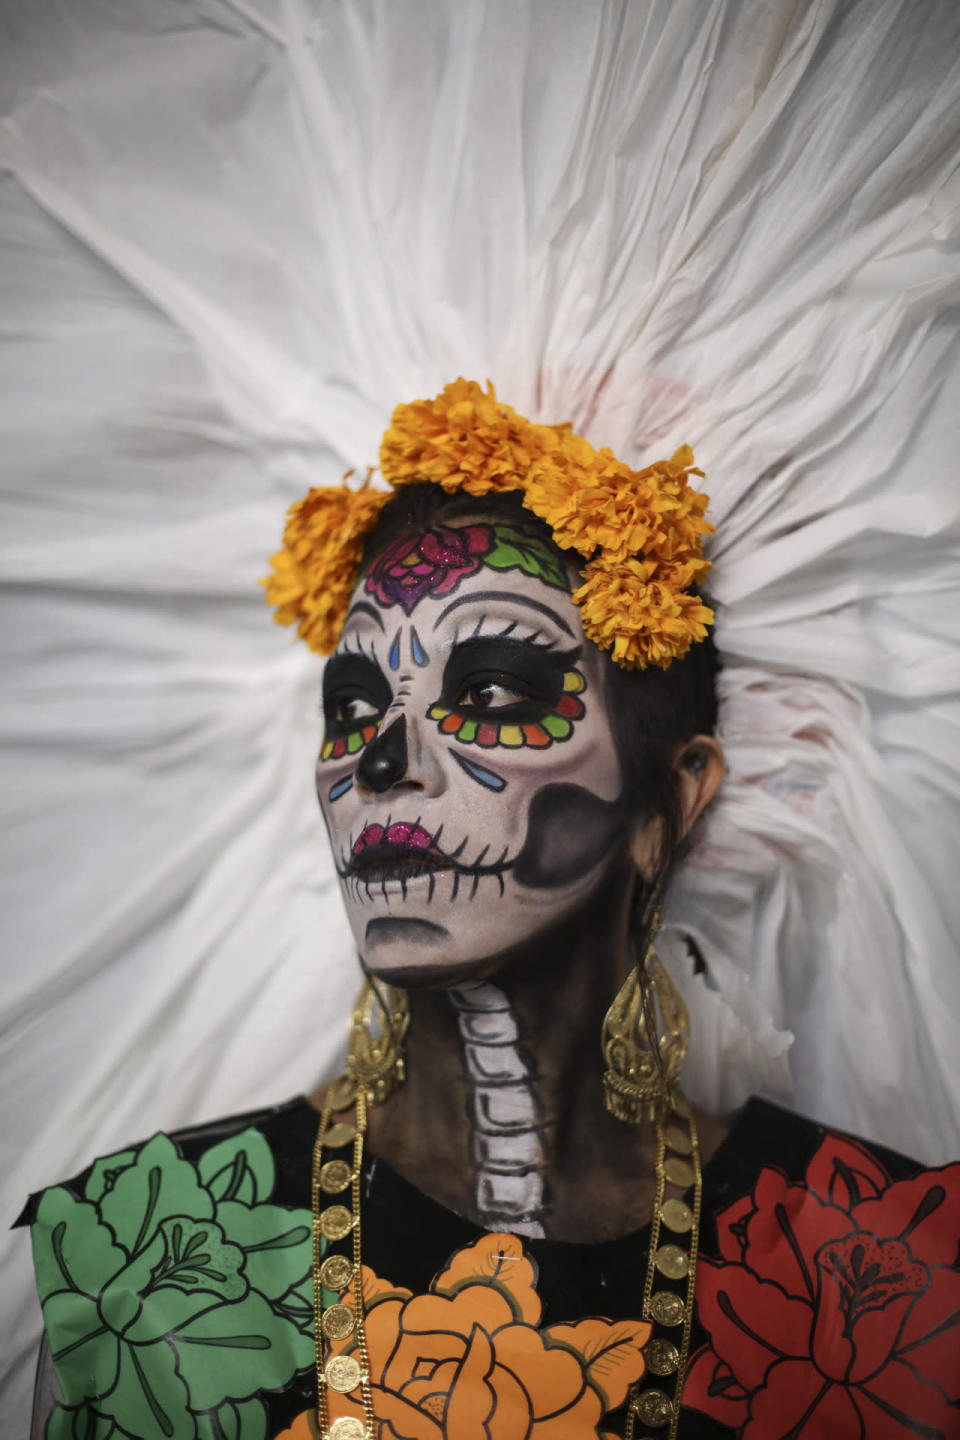 CIUDAD DE MÉXICO. Como parte de las fiestas y festejos por el Día de muertos, fue realizado el Primer Concurso de Catrinas en el Museo Nacional de Arte (MUNAL). FOTO: ADOLFO VLADIMIR /CUARTOSCURO.COM